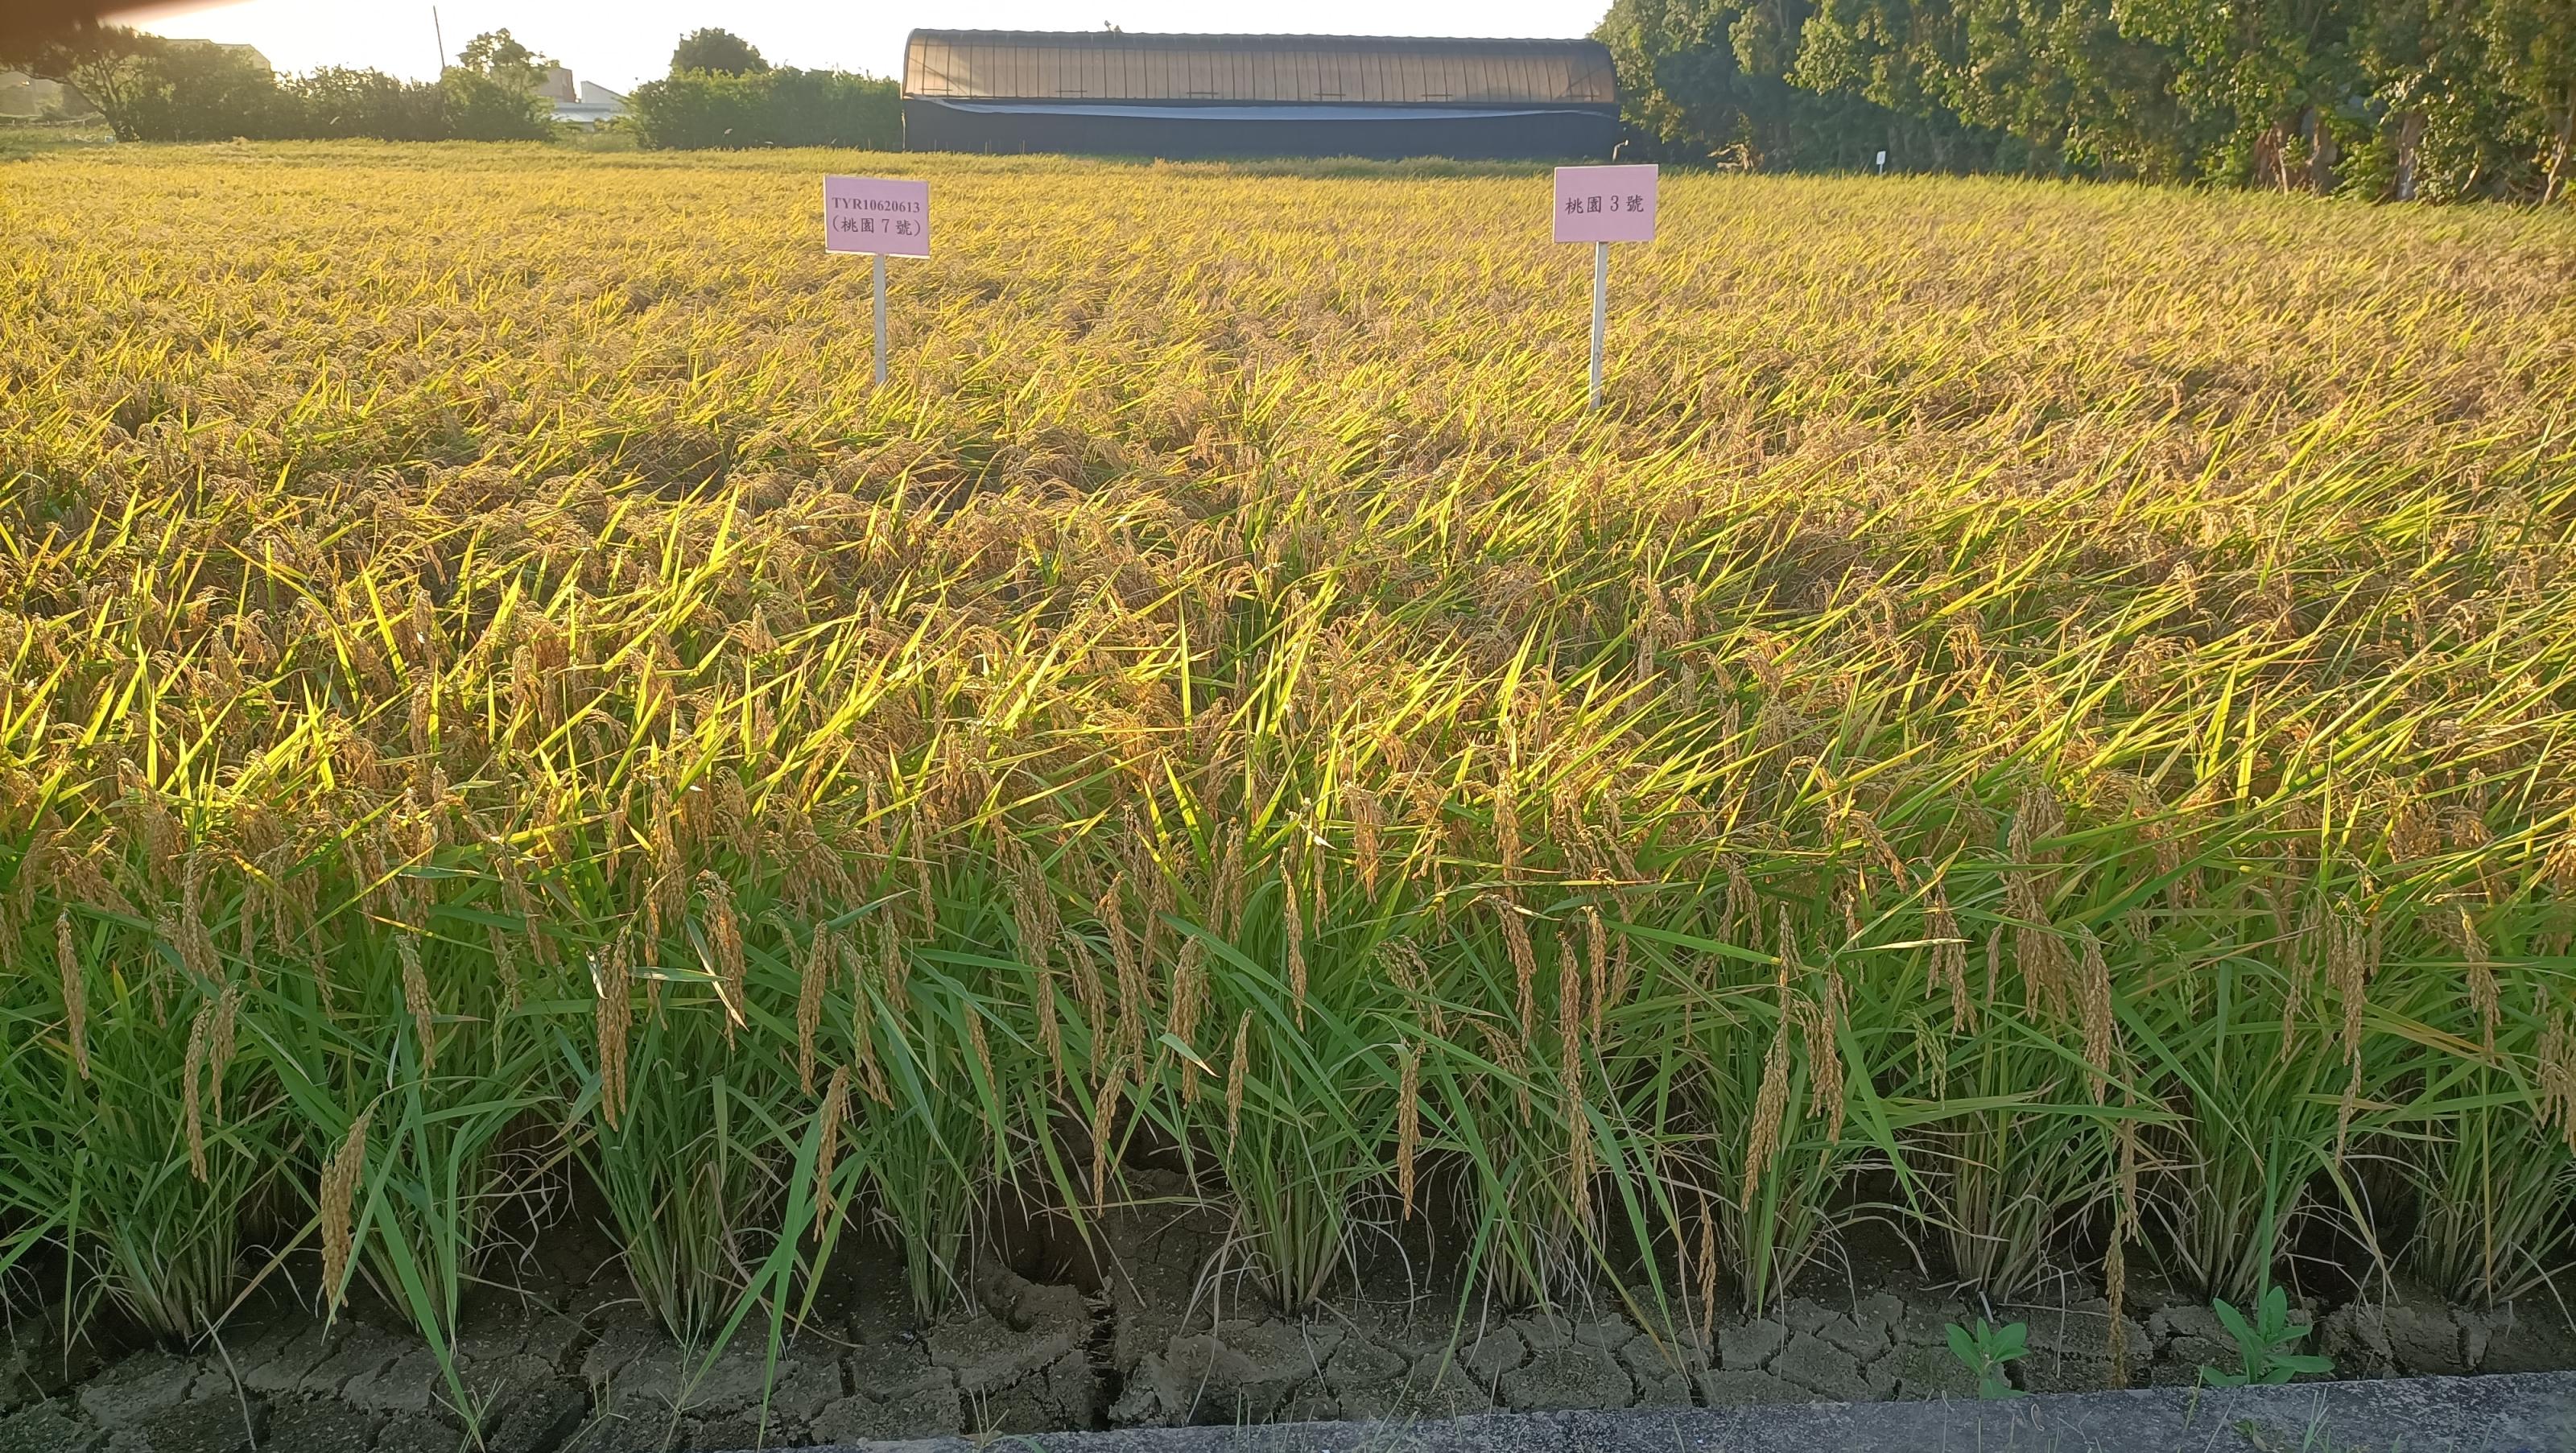 圖5.水稻品種桃園7號(左)及桃園3號(右)於本場試驗田經慣行藥劑防治之栽培模式觀察其生長表現差異。